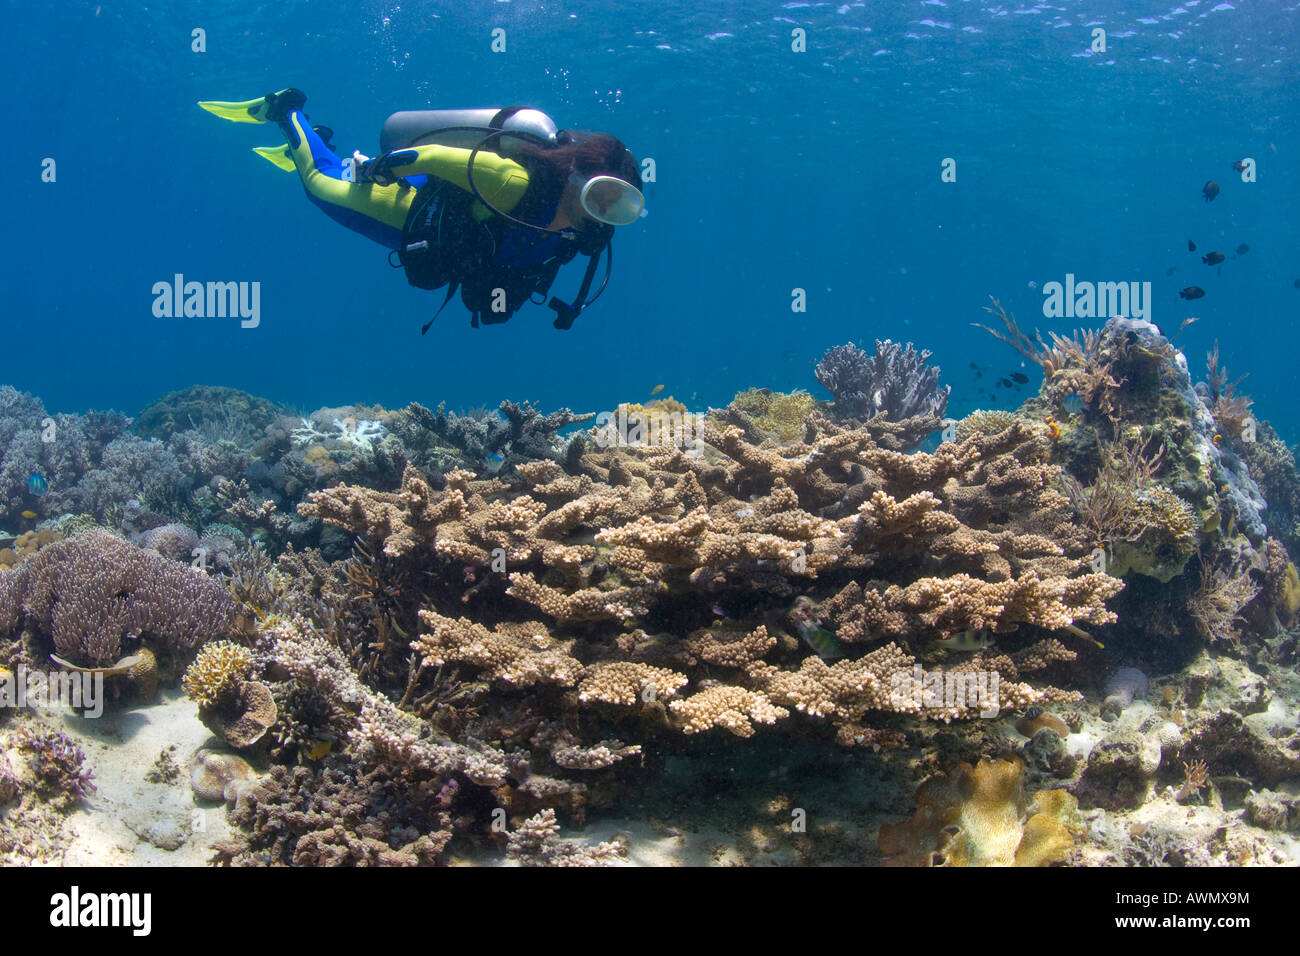 Programme de protection des récifs coralliens sur l'Indonésie dans le parc national de la marine Bunaken. Un plongeur nage au-dessus des coraux, Nordsulawesi, J Banque D'Images